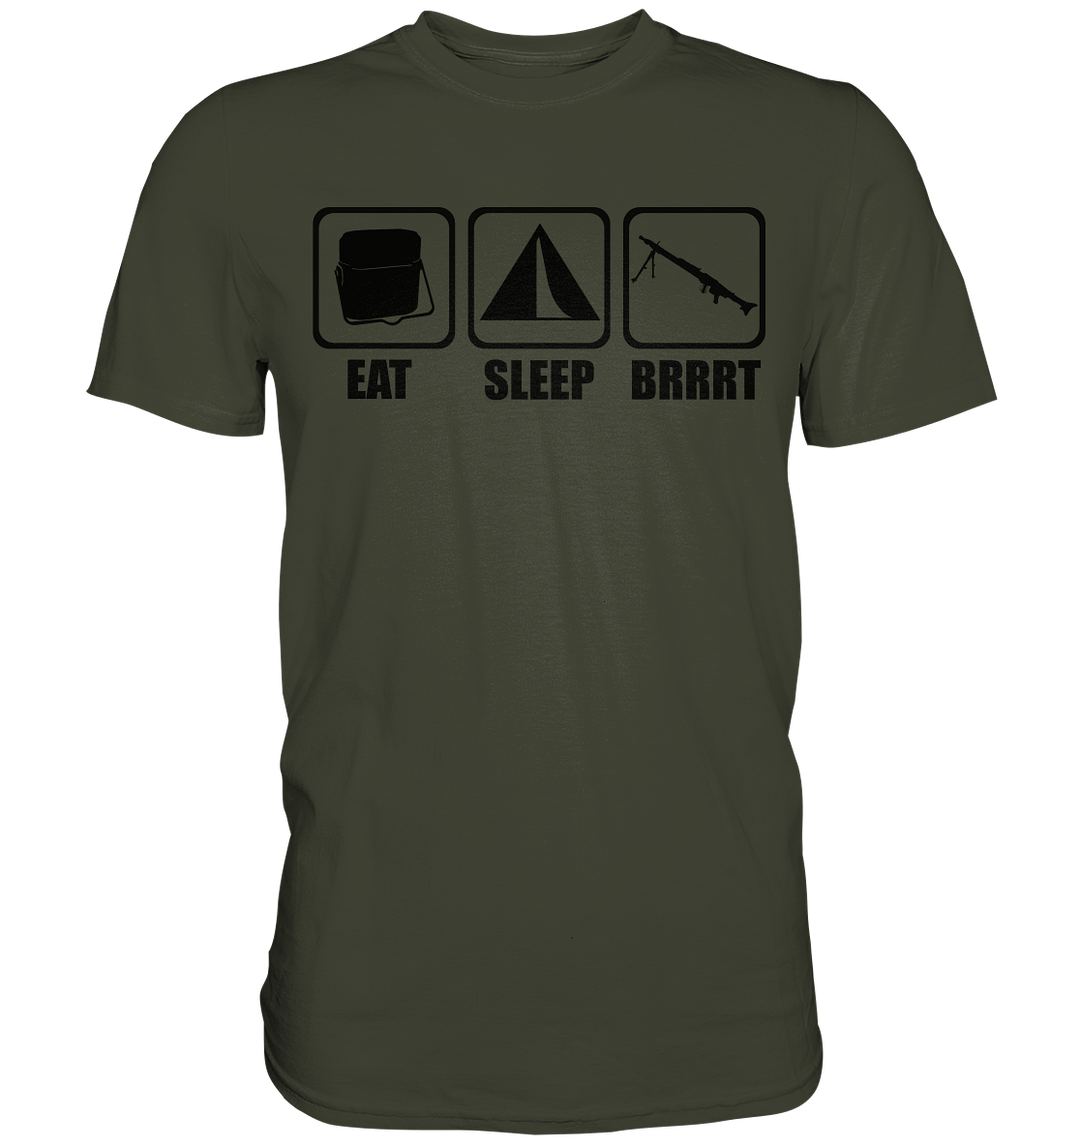 Eat. Sleep. BRRRT. - Premium Shirt